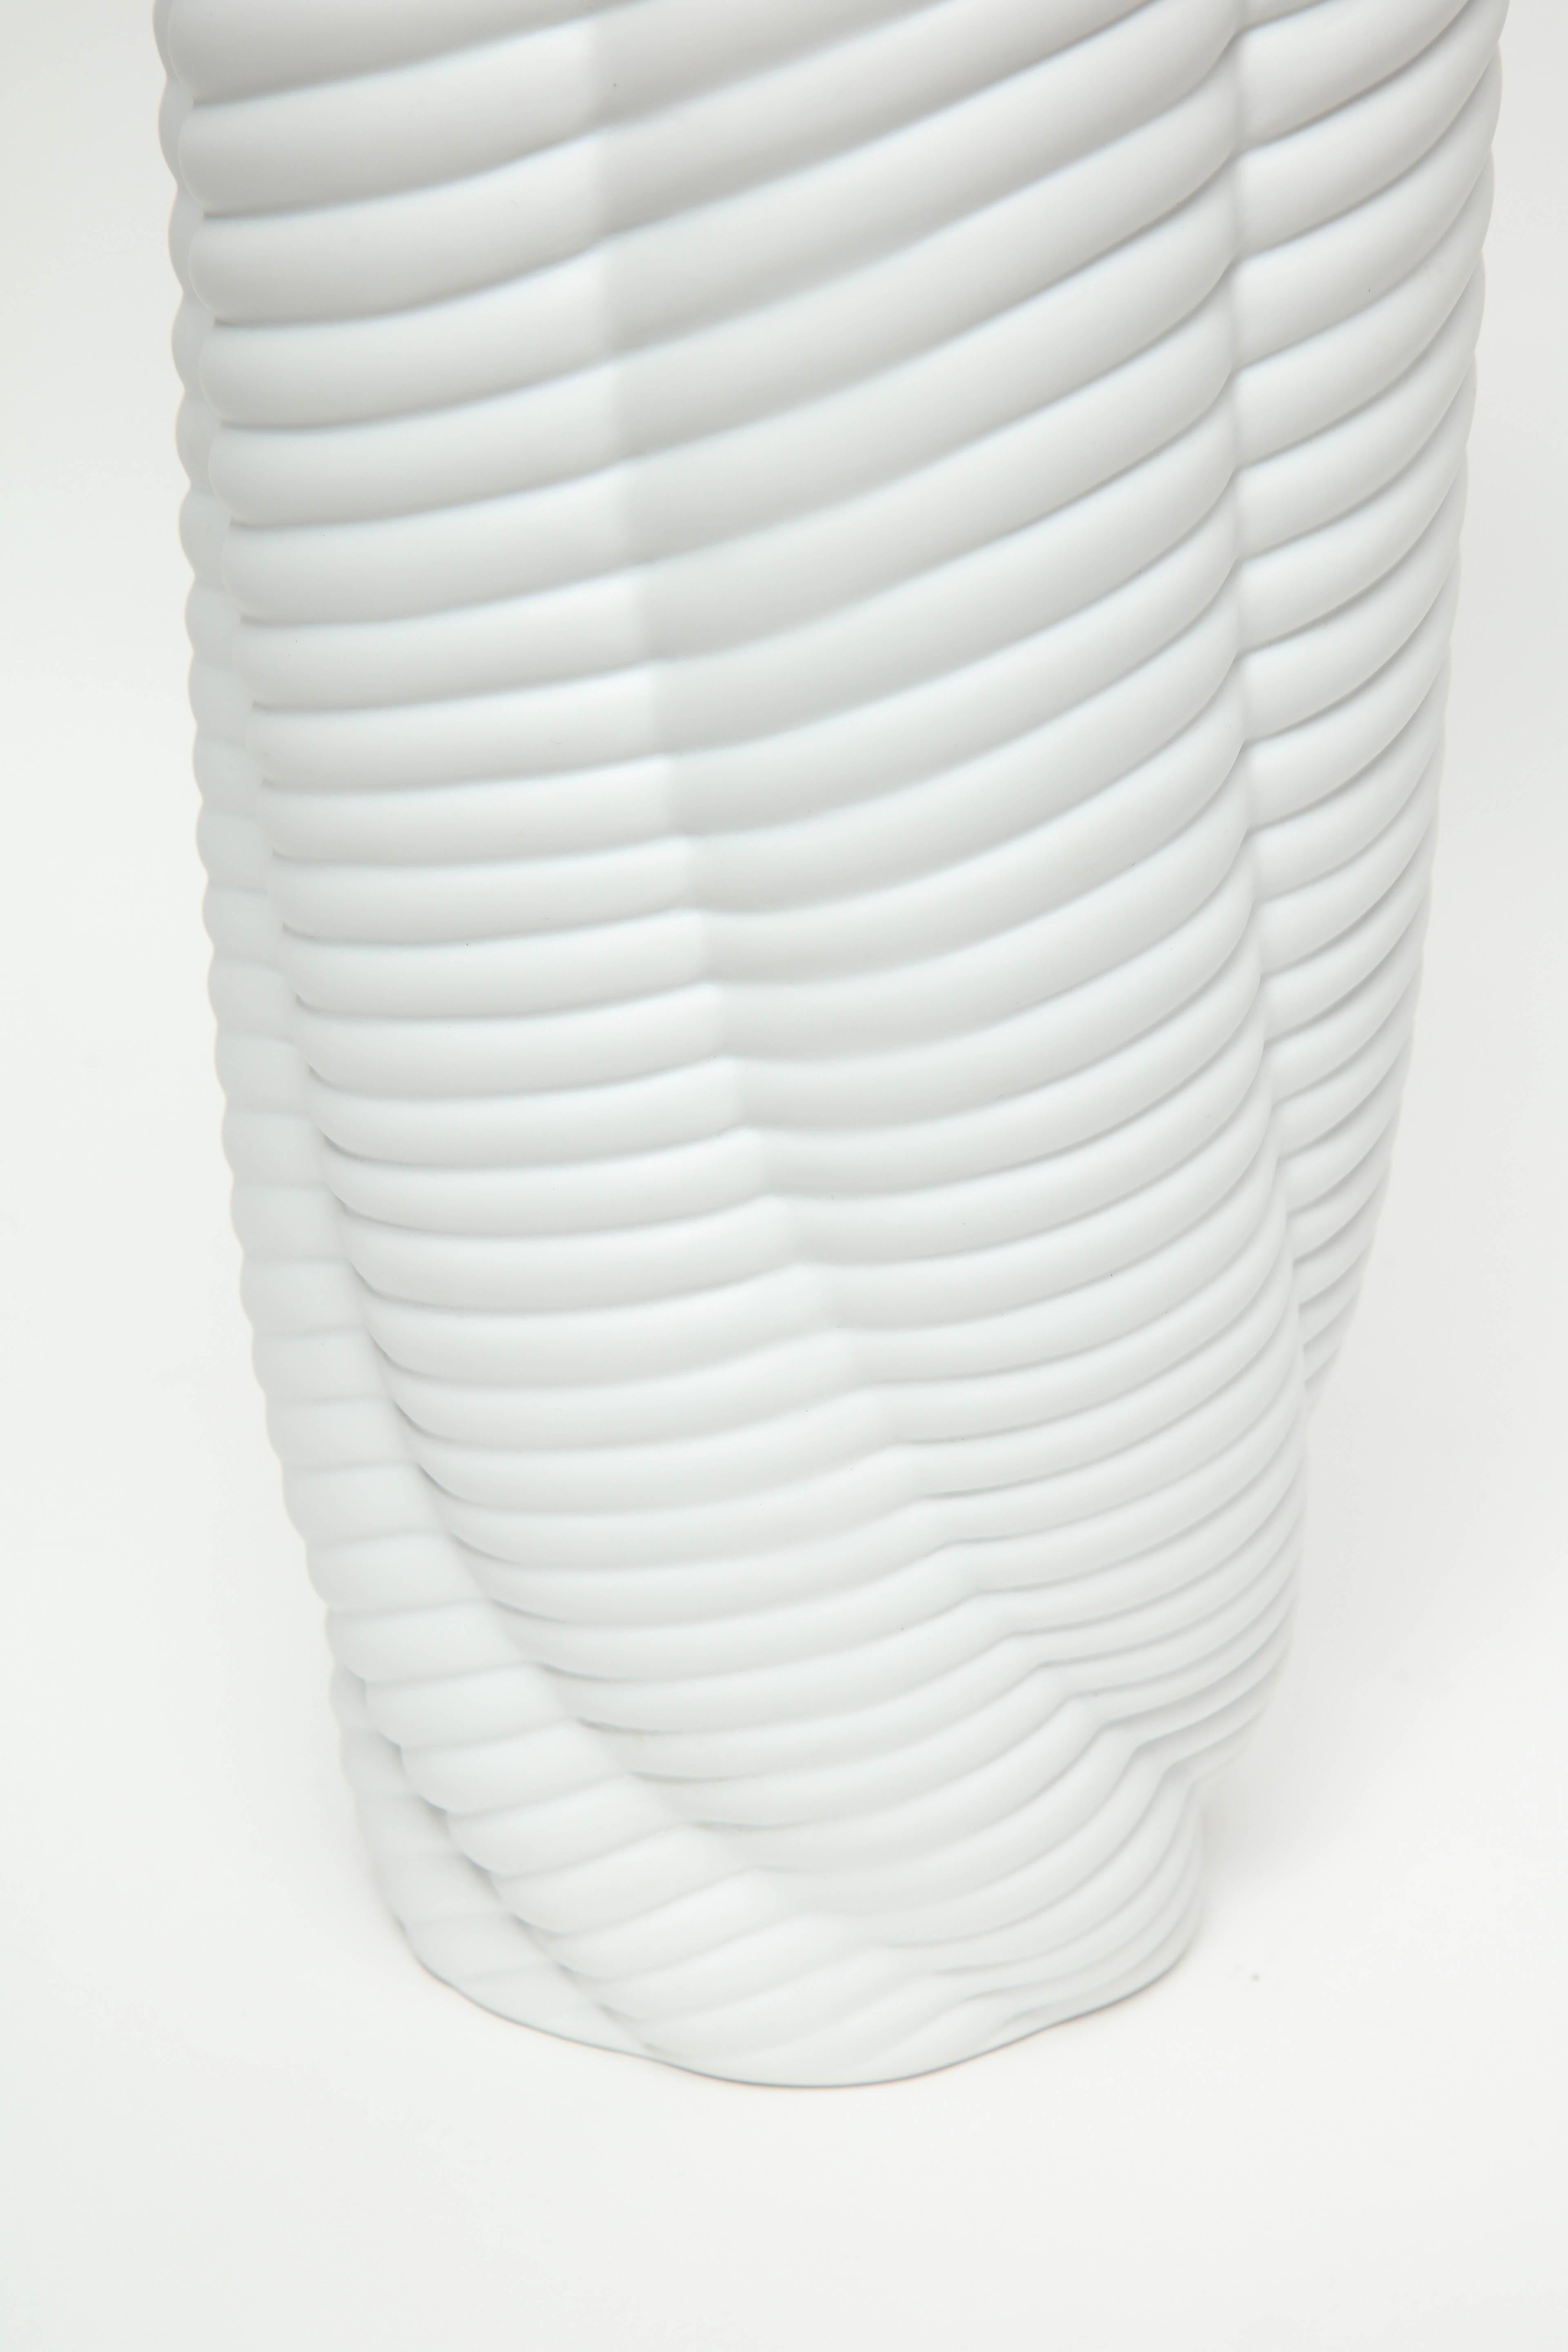 European Pair of Rippled Porcelain Vases